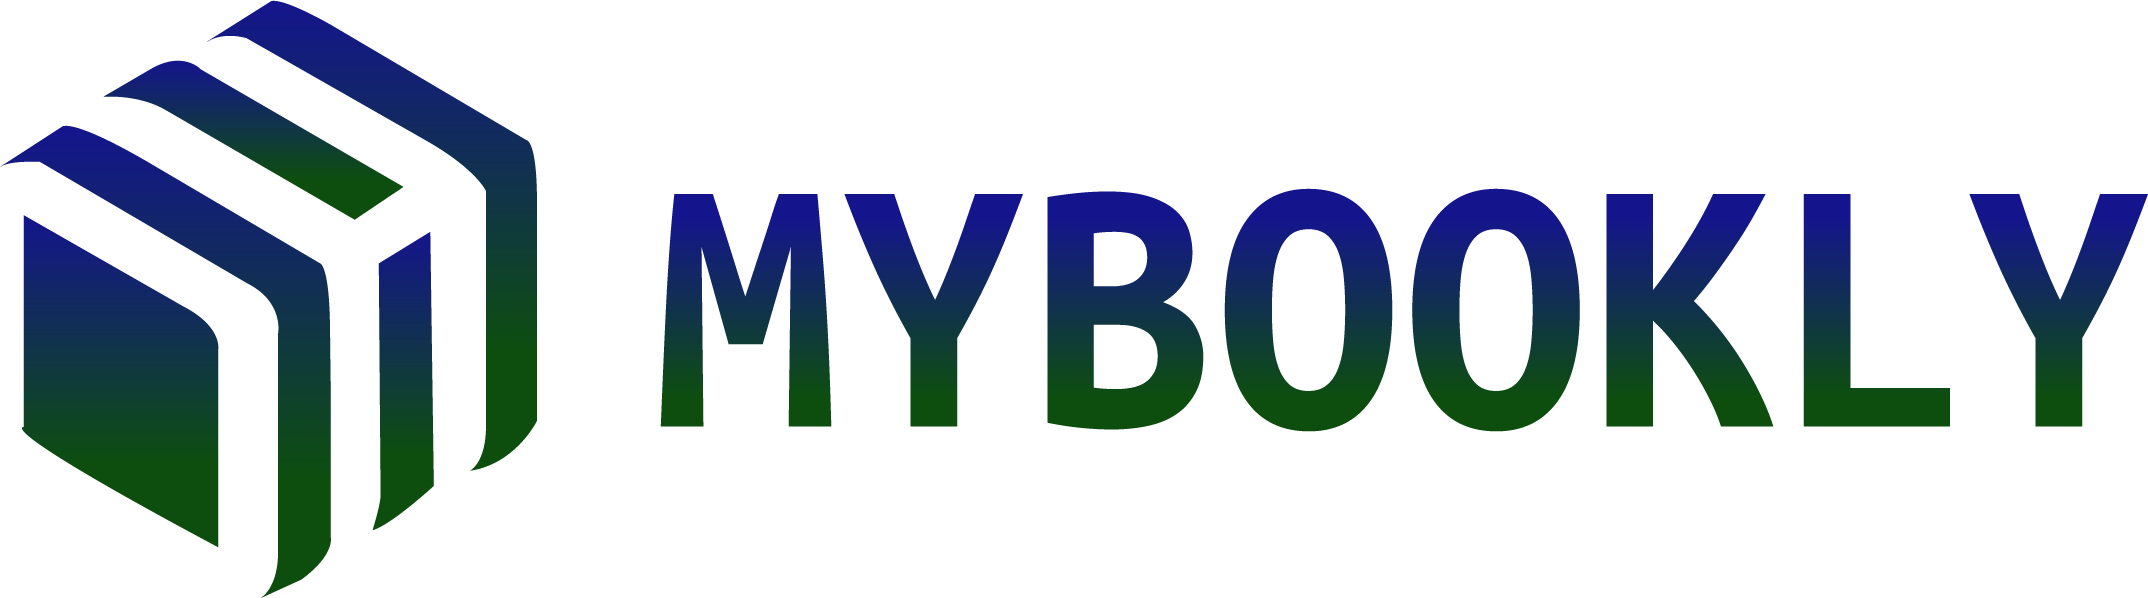 MyBookly logo